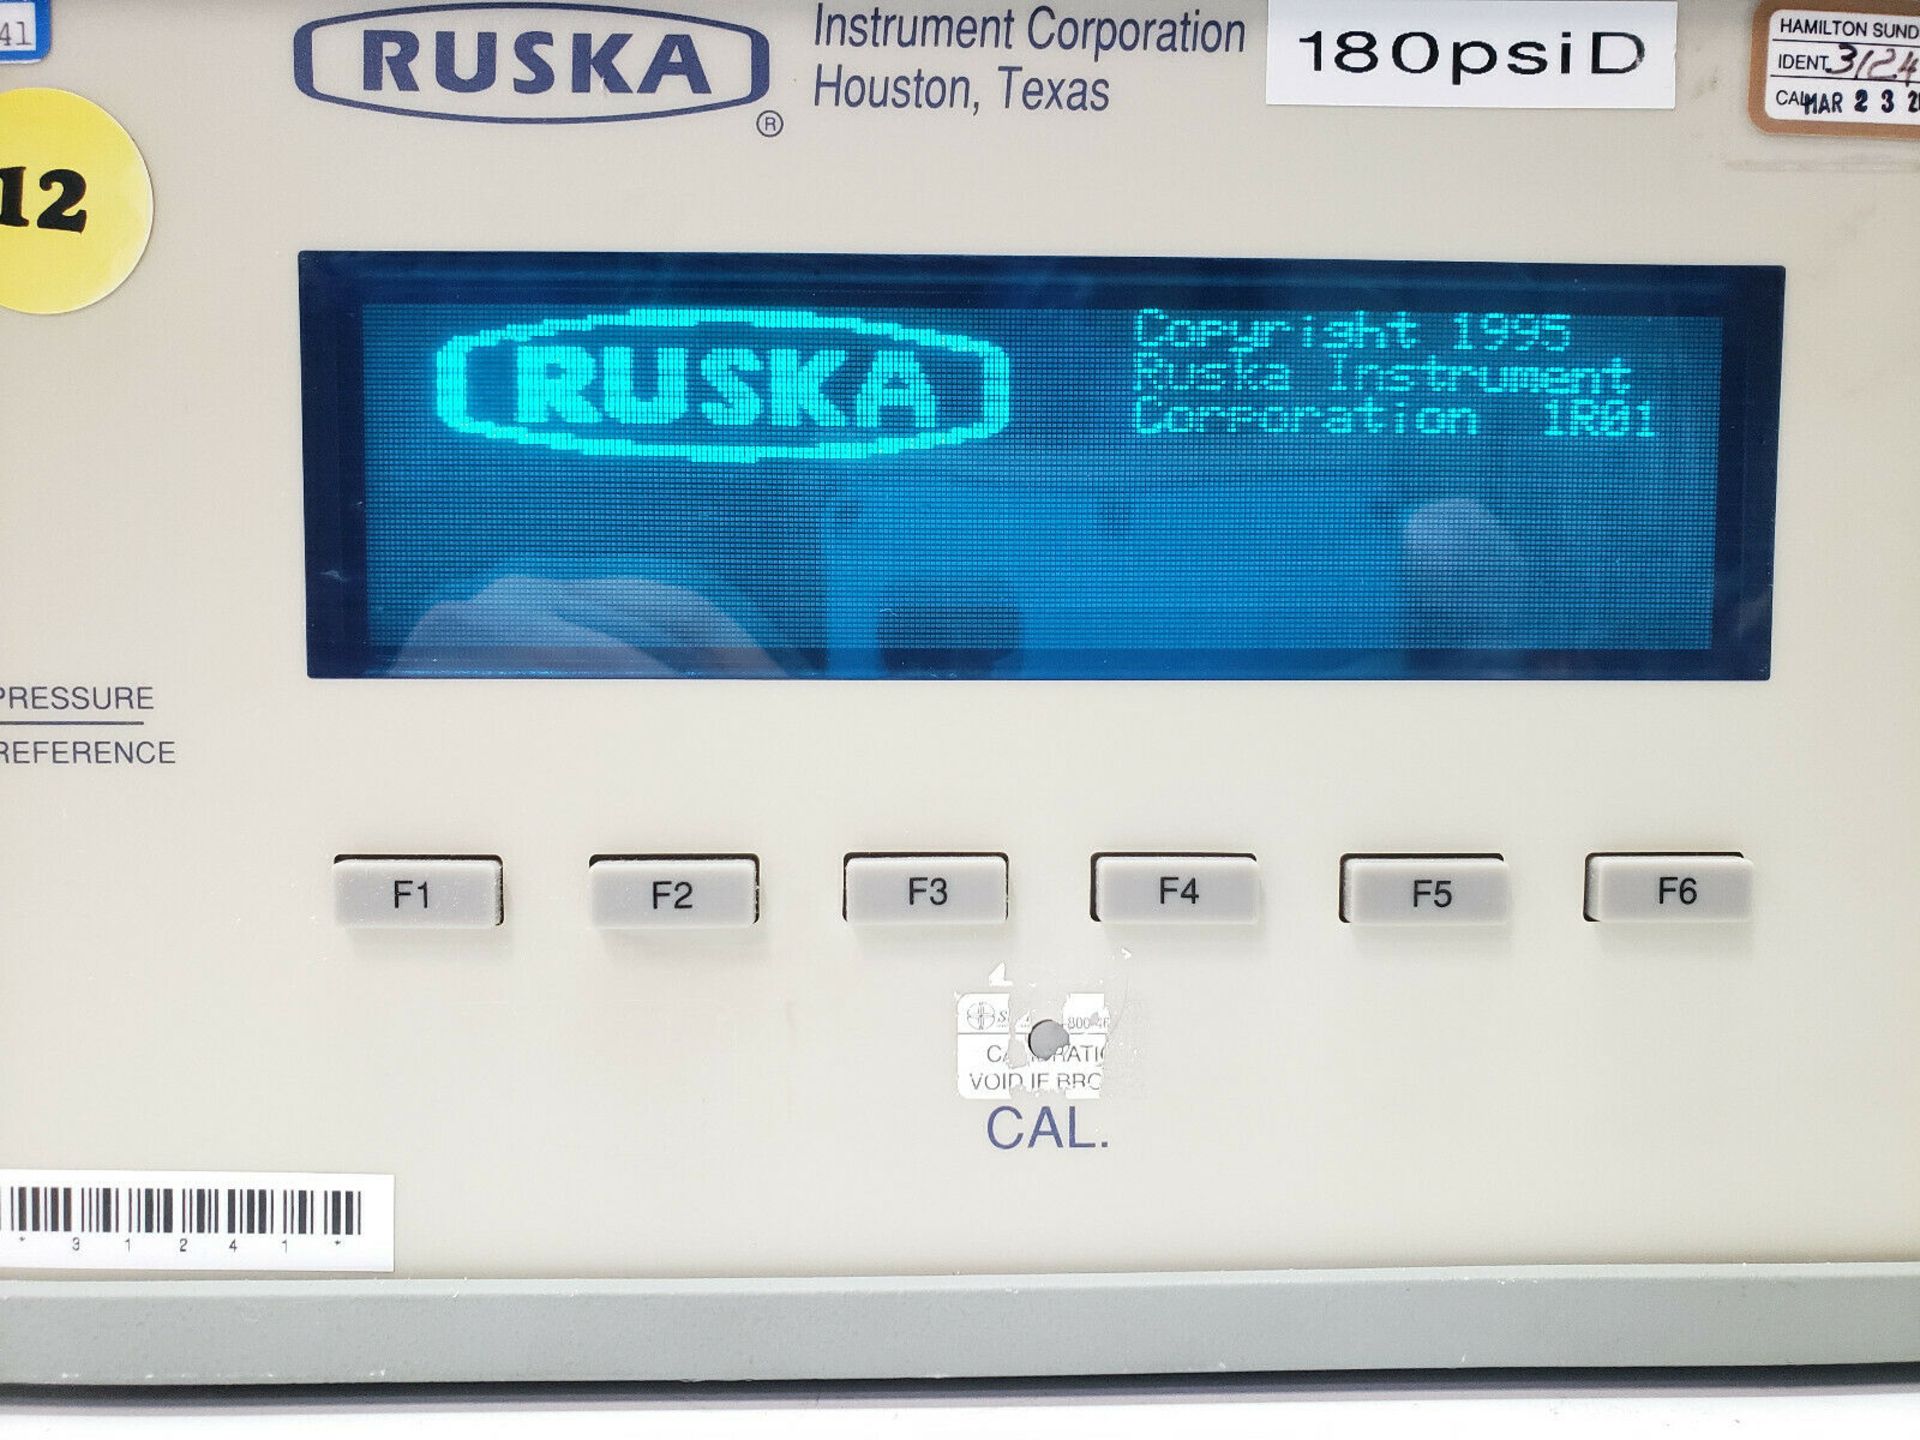 Ruska Model 7010 Digital Pressure Controller - Image 5 of 7